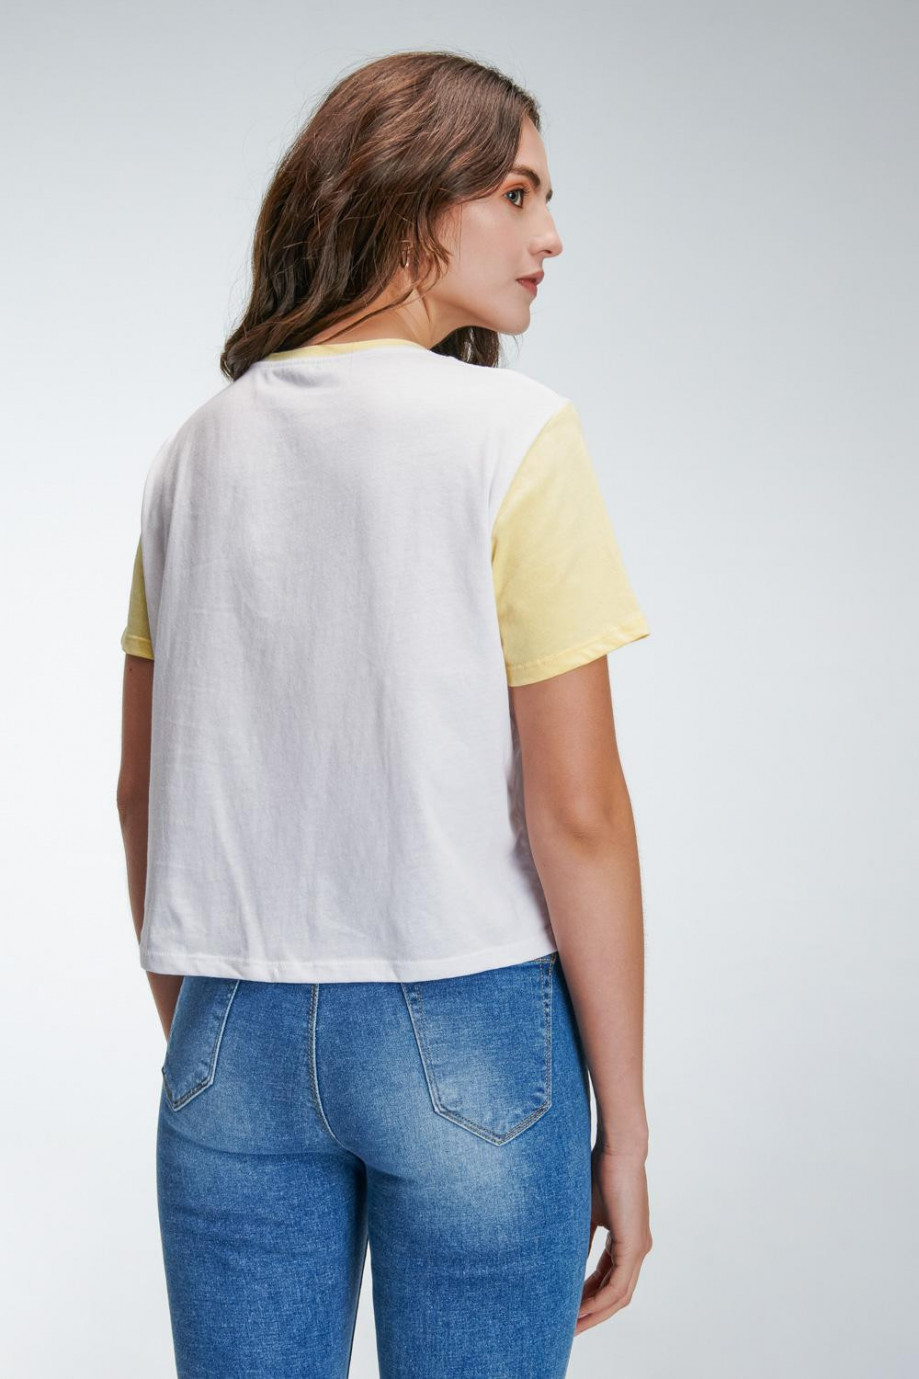 Camiseta blanca manga corta con estampado y cuello en contraste